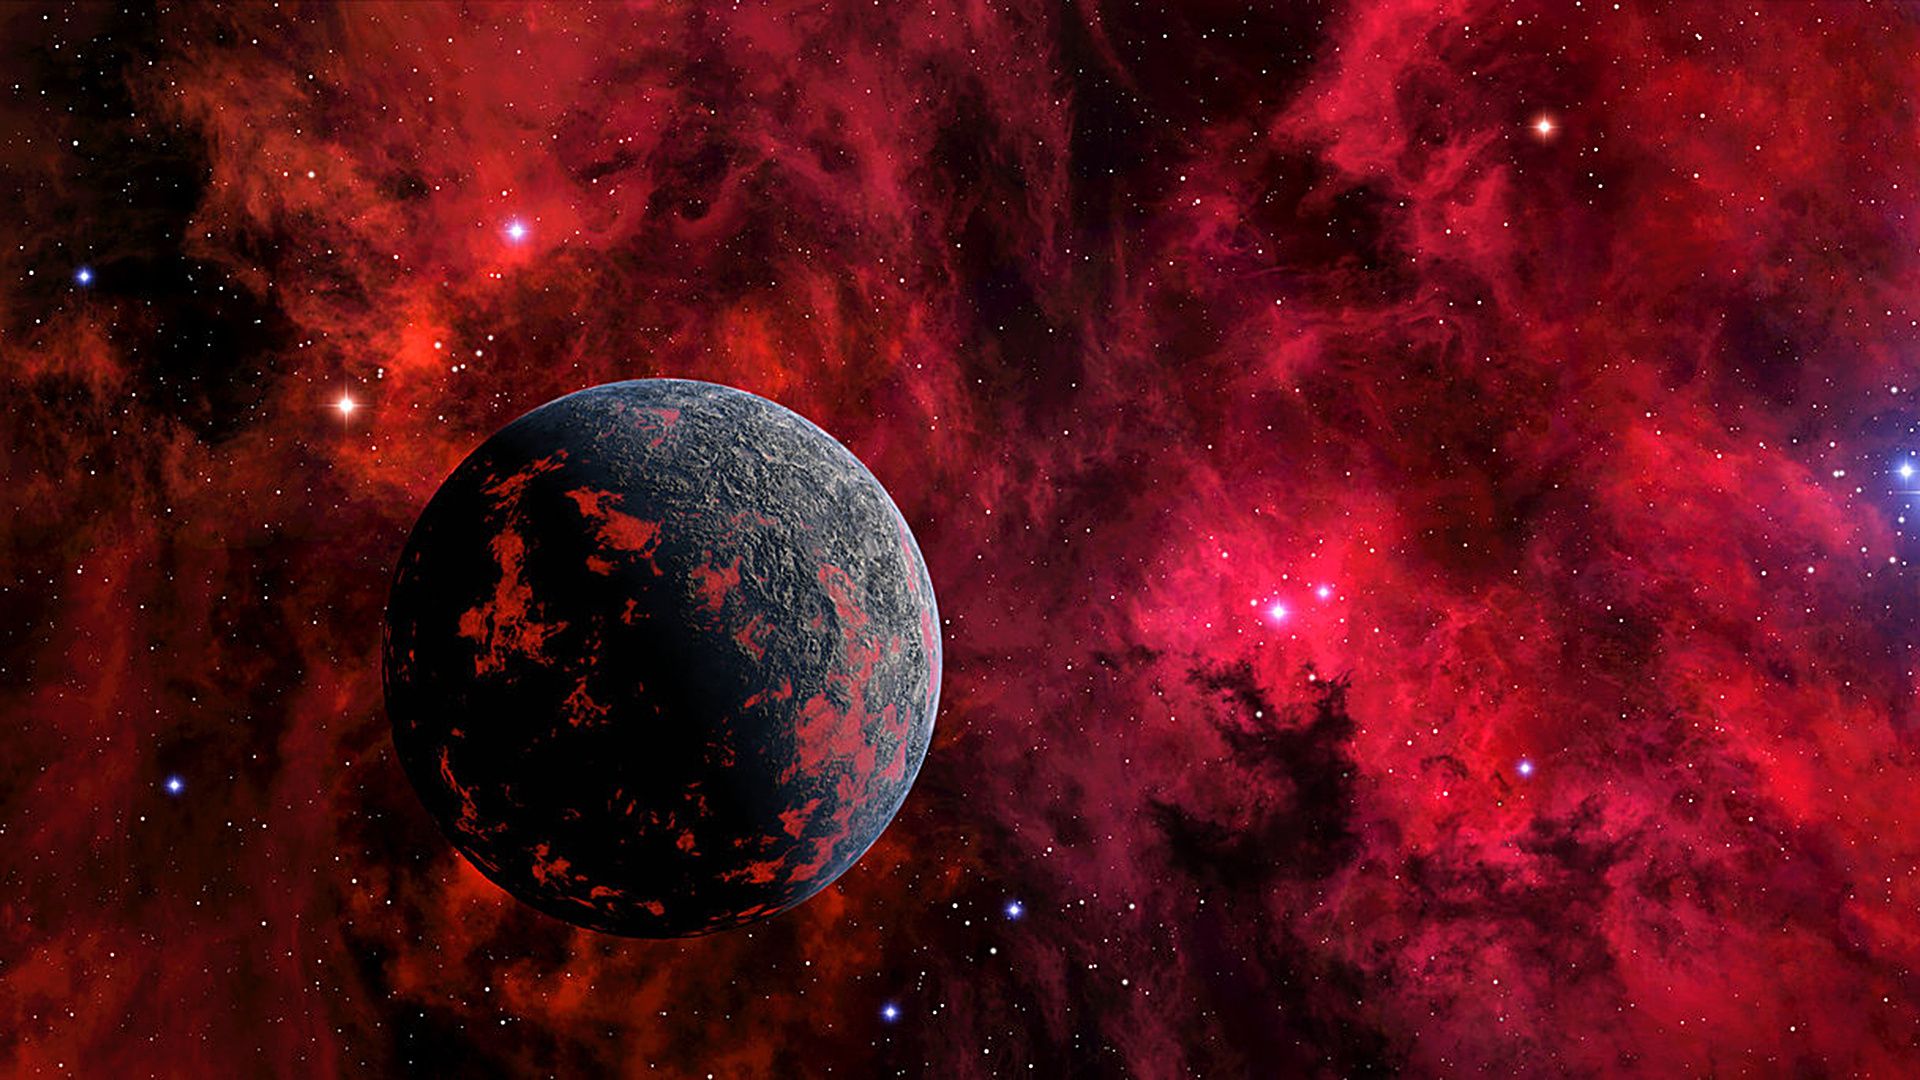 Hình nền vũ trụ đỏ đầy mê hoặc này sẽ mang đến cho bạn những trải nghiệm đáng nhớ về không gian bao la và sâu thẳm. Bạn sẽ thấy mình quyến rũ bởi nét đẹp mãnh liệt của các hành tinh và các hệ tinh hà đầy cuốn hút, khiến bạn cảm thấy thật nhỏ bé và kính phục.